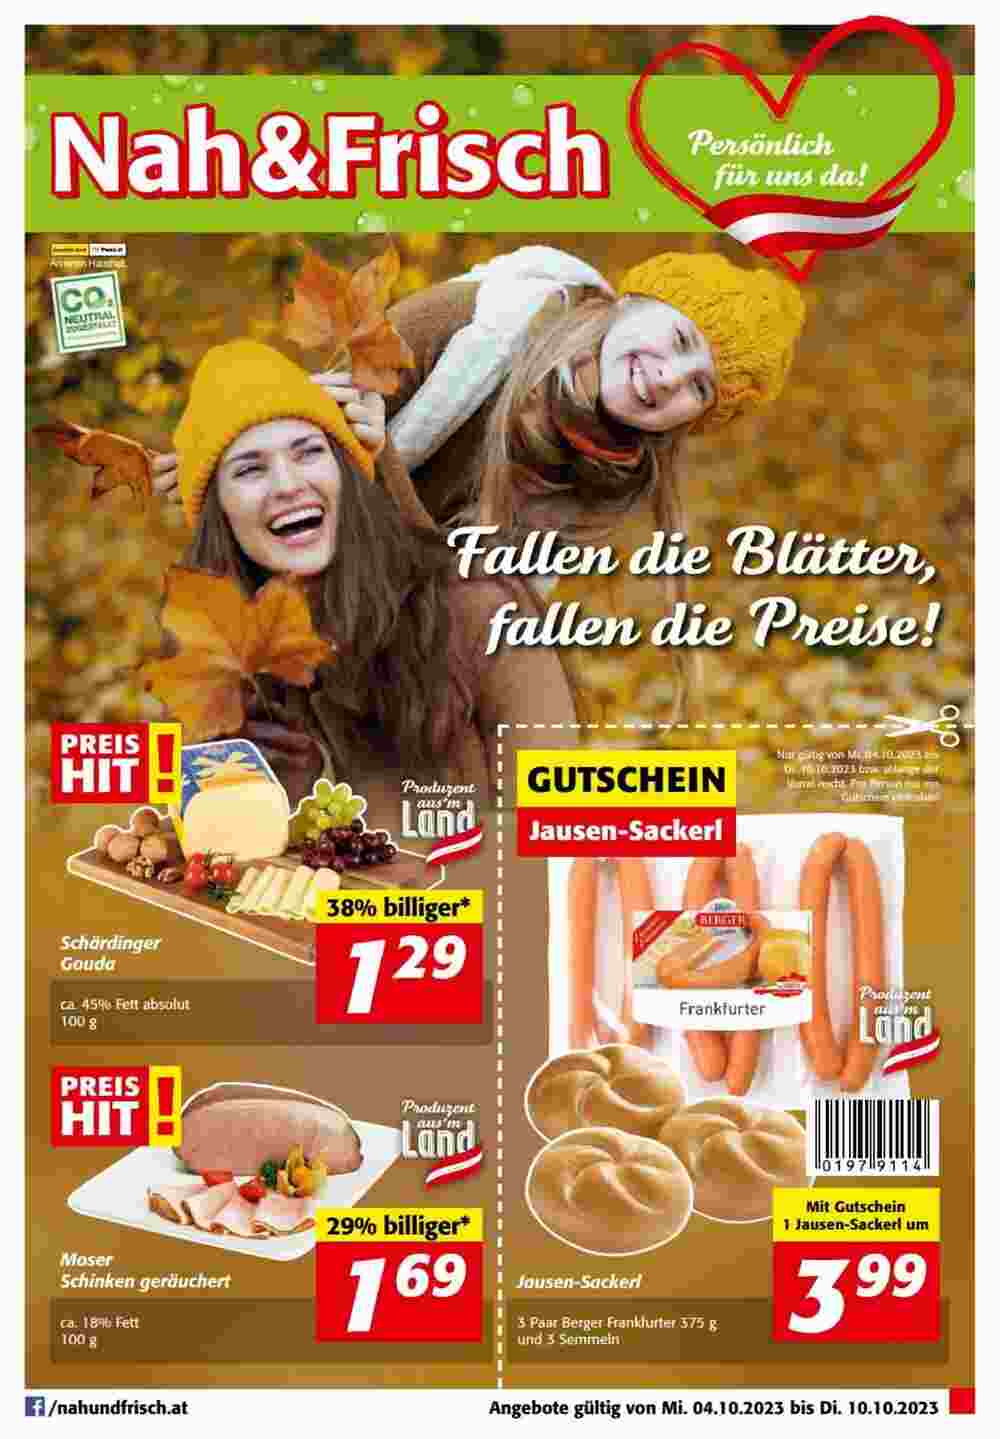 Nah&Frisch Flugblatt (ab 04.10.2023) - Angebote und Prospekt - Seite 1